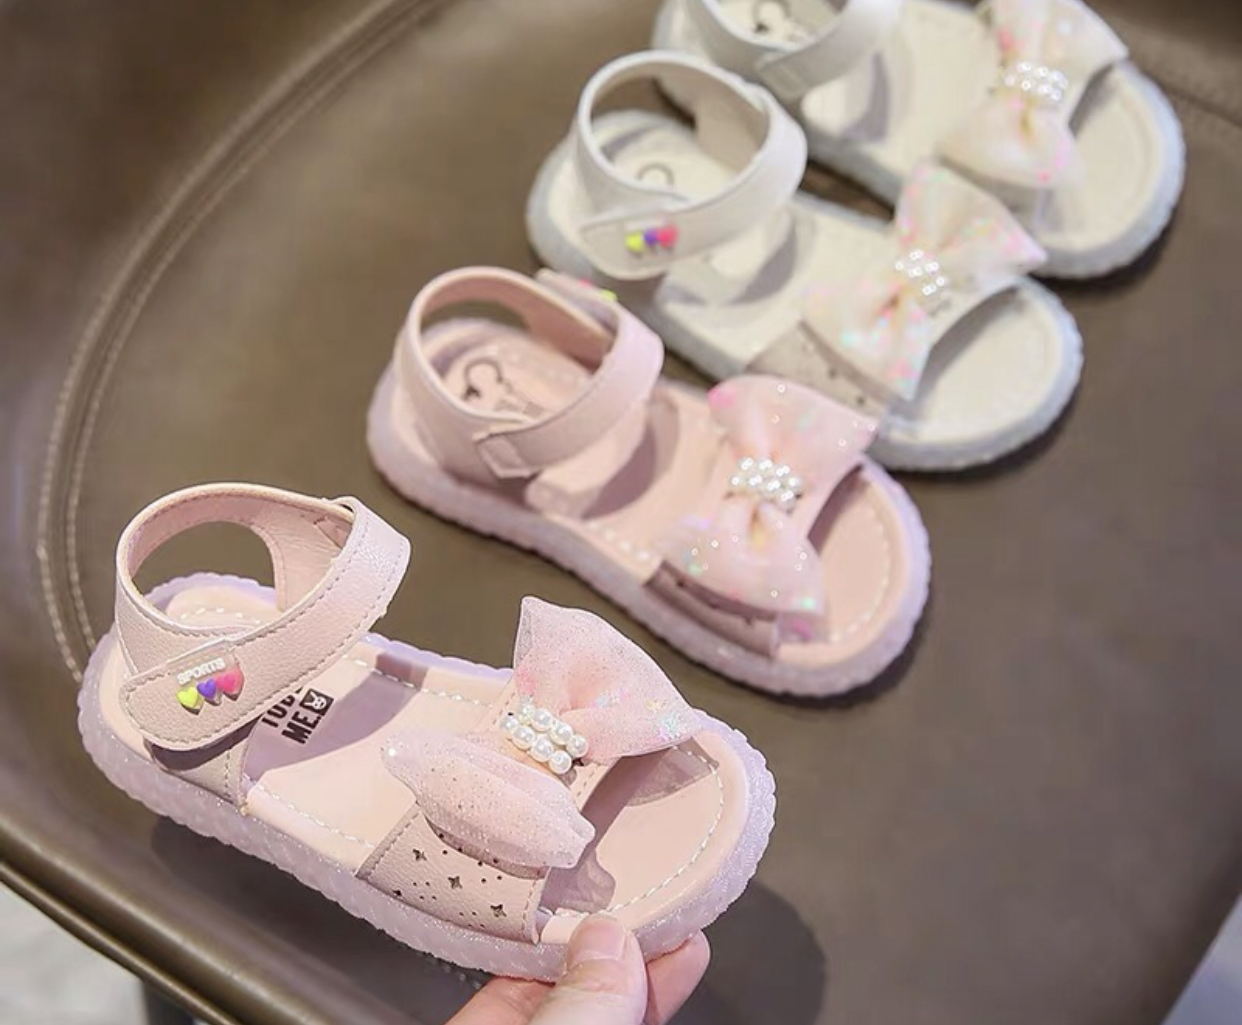 凉鞋宝宝鞋卡通印花婴儿鞋2020年新款舒适柔软小孩鞋产品图